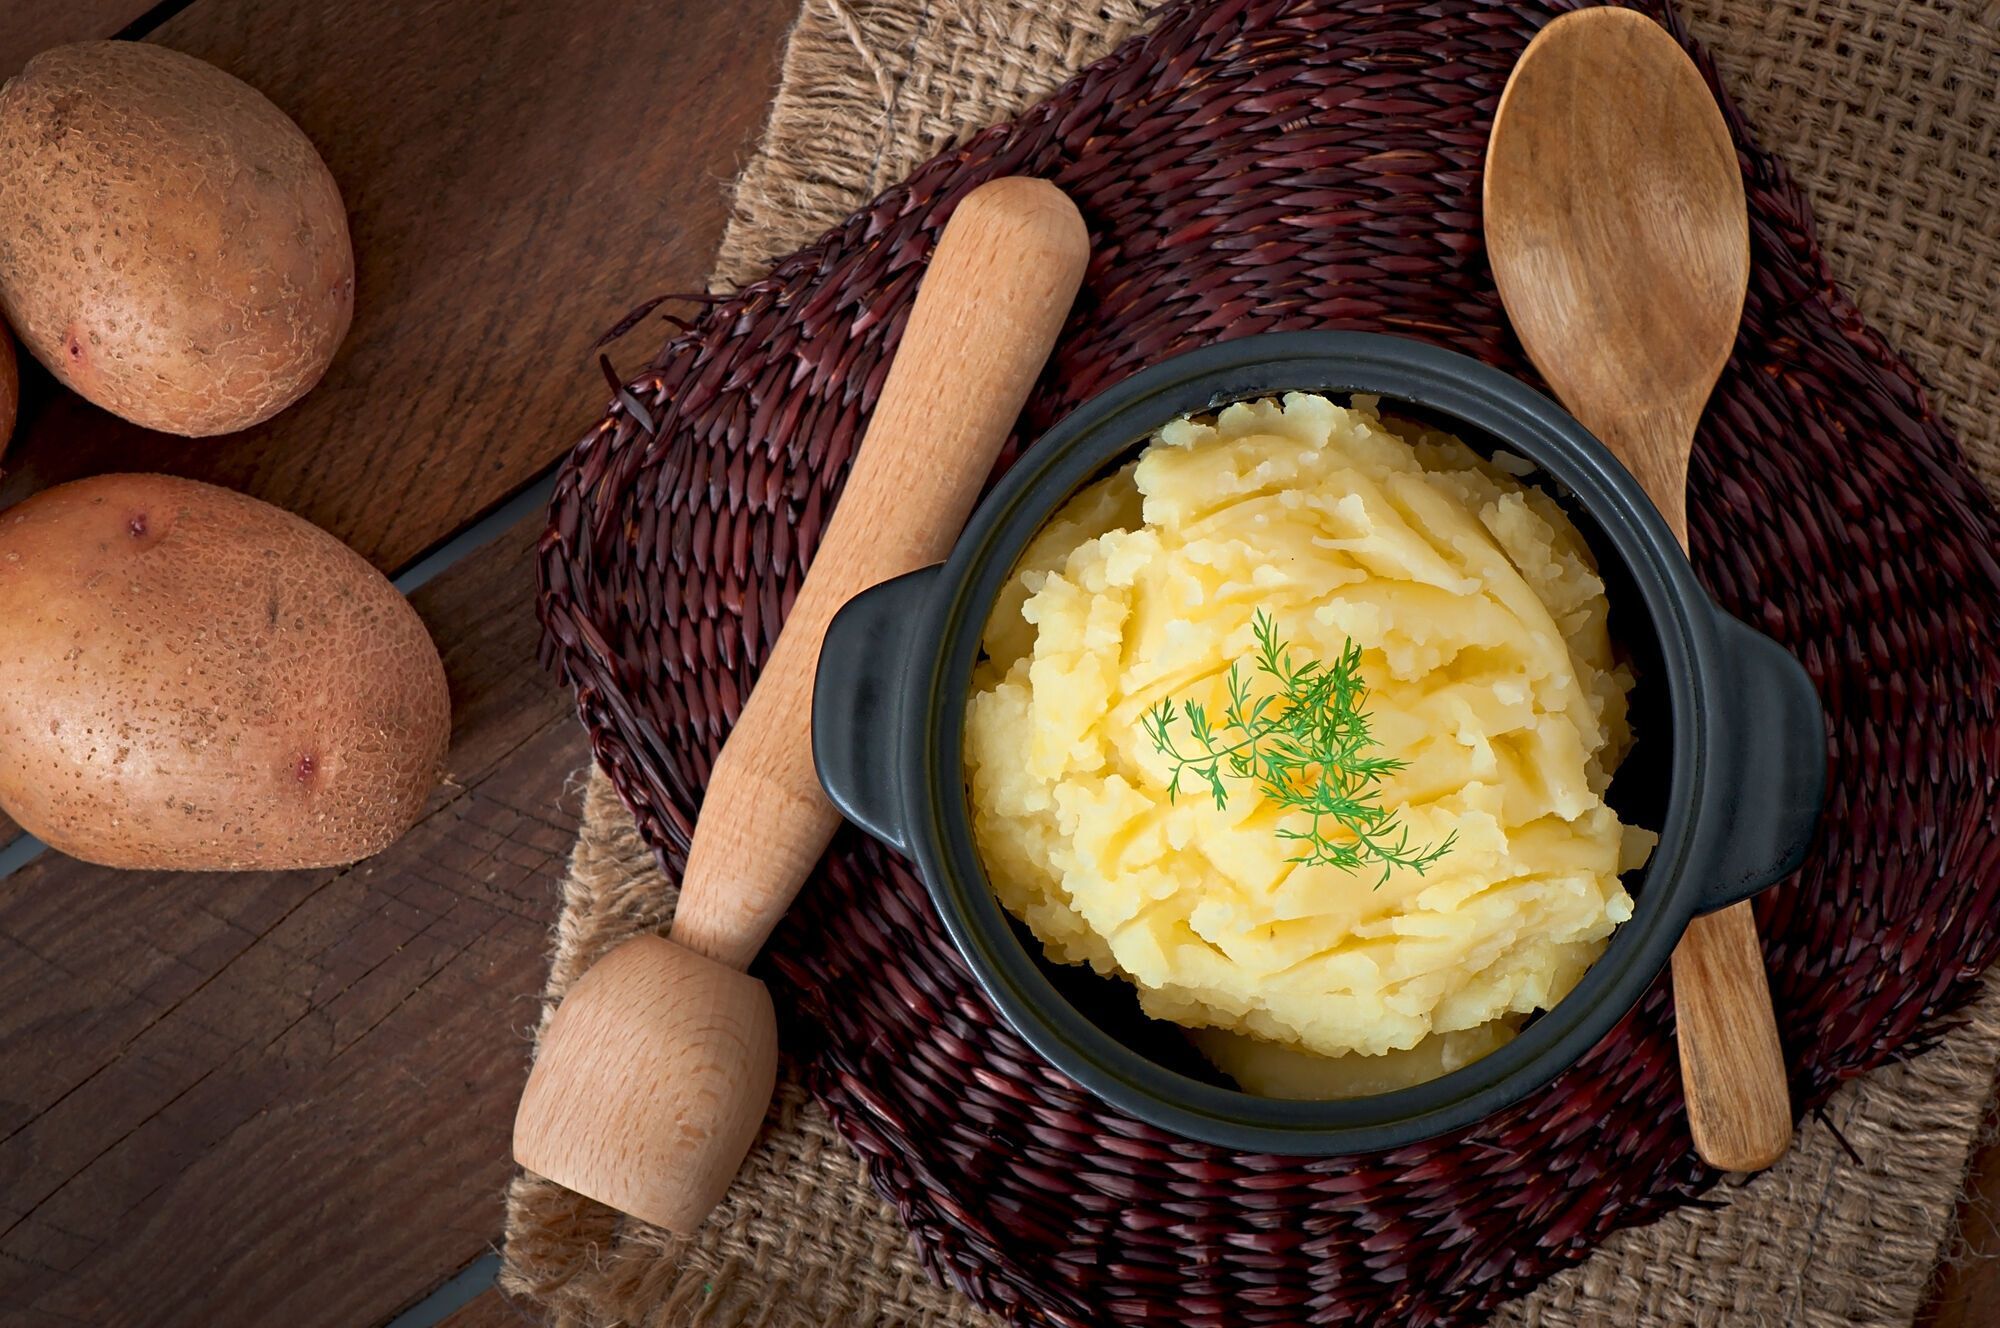 Dlaczego tłuczone ziemniaki wychodzą szare i grudkowate: nigdy nie gotuj ich w ten sposób